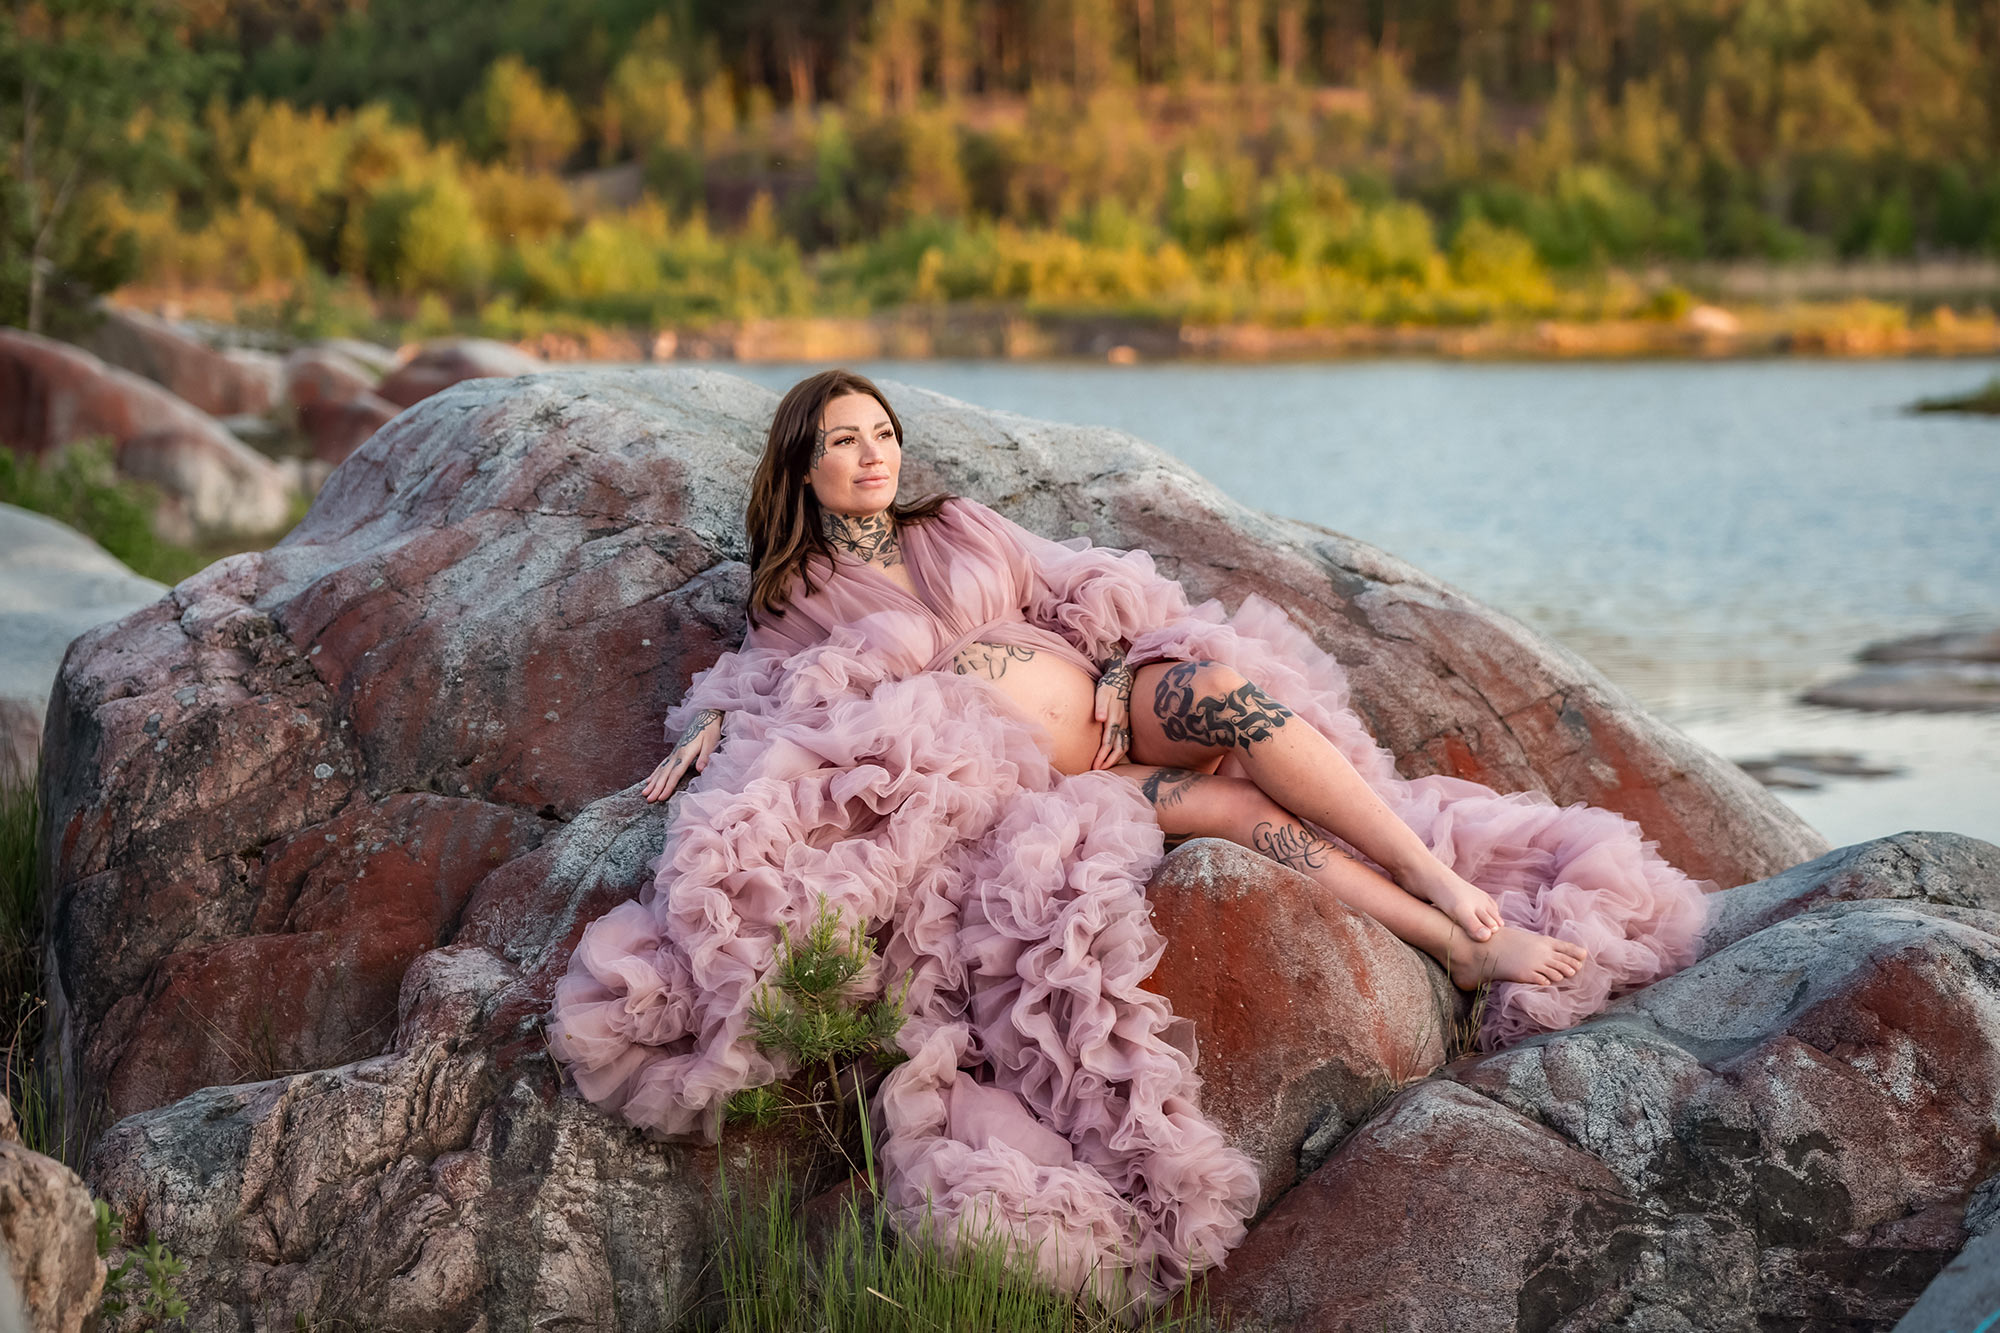 Gravidfotografering bland klipporna i ett stenbrott. I bakgrunden syns vatten och en skog i kvällsljus. Kvinnan har på sig en rosa gravidklänning i tyll som flöder ut över klipporna.